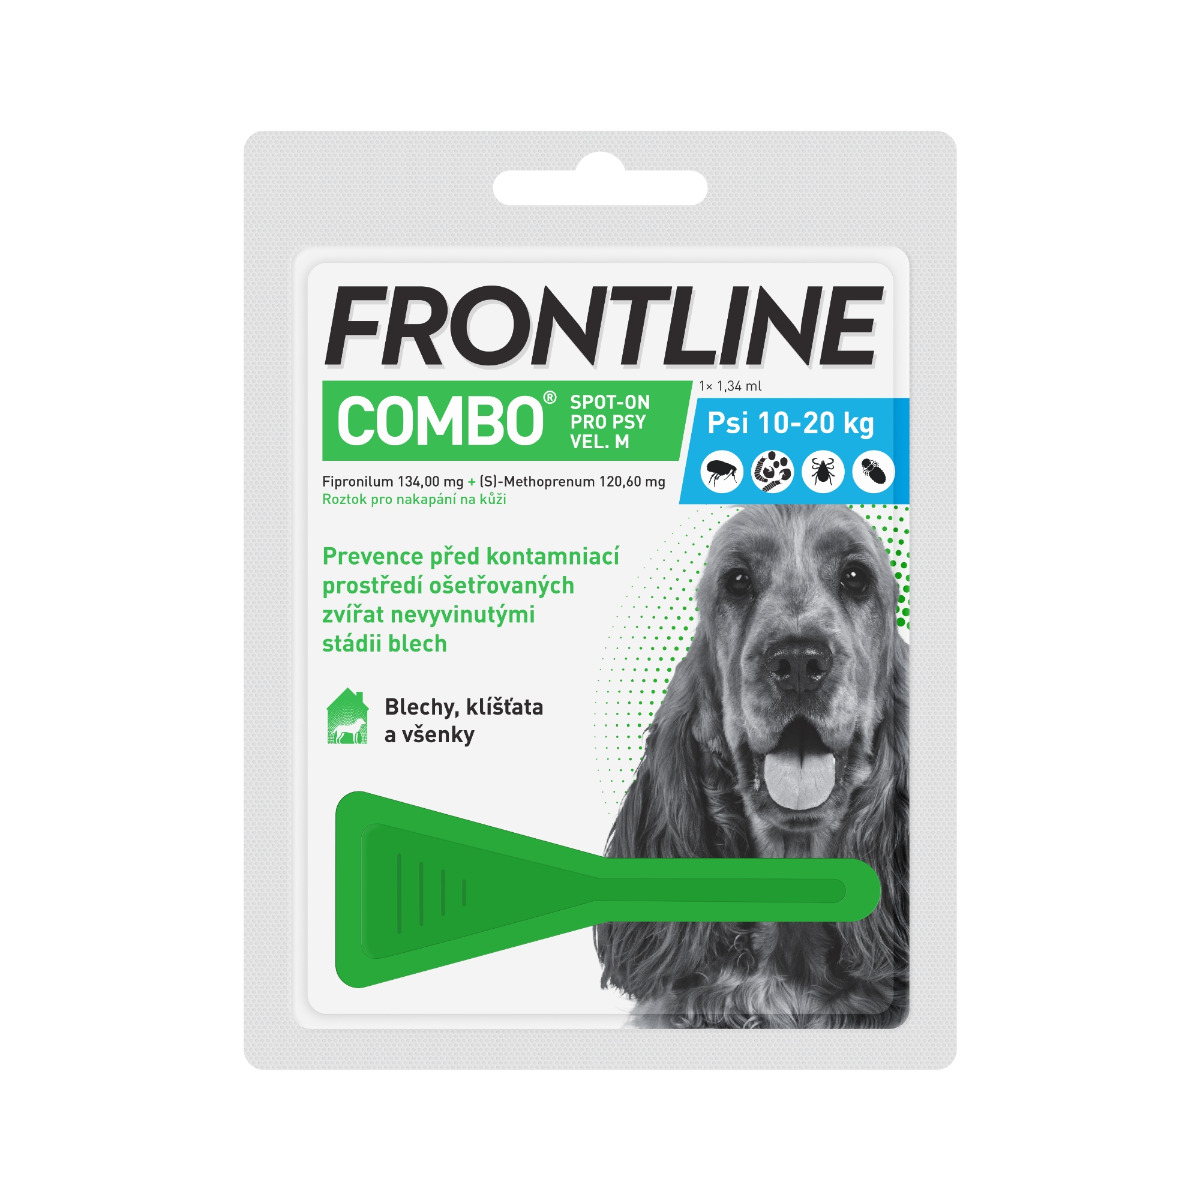 Frontline COMBO Spot on Dog M 1.34 ml 10-20 kg 1 pipeta Frontline